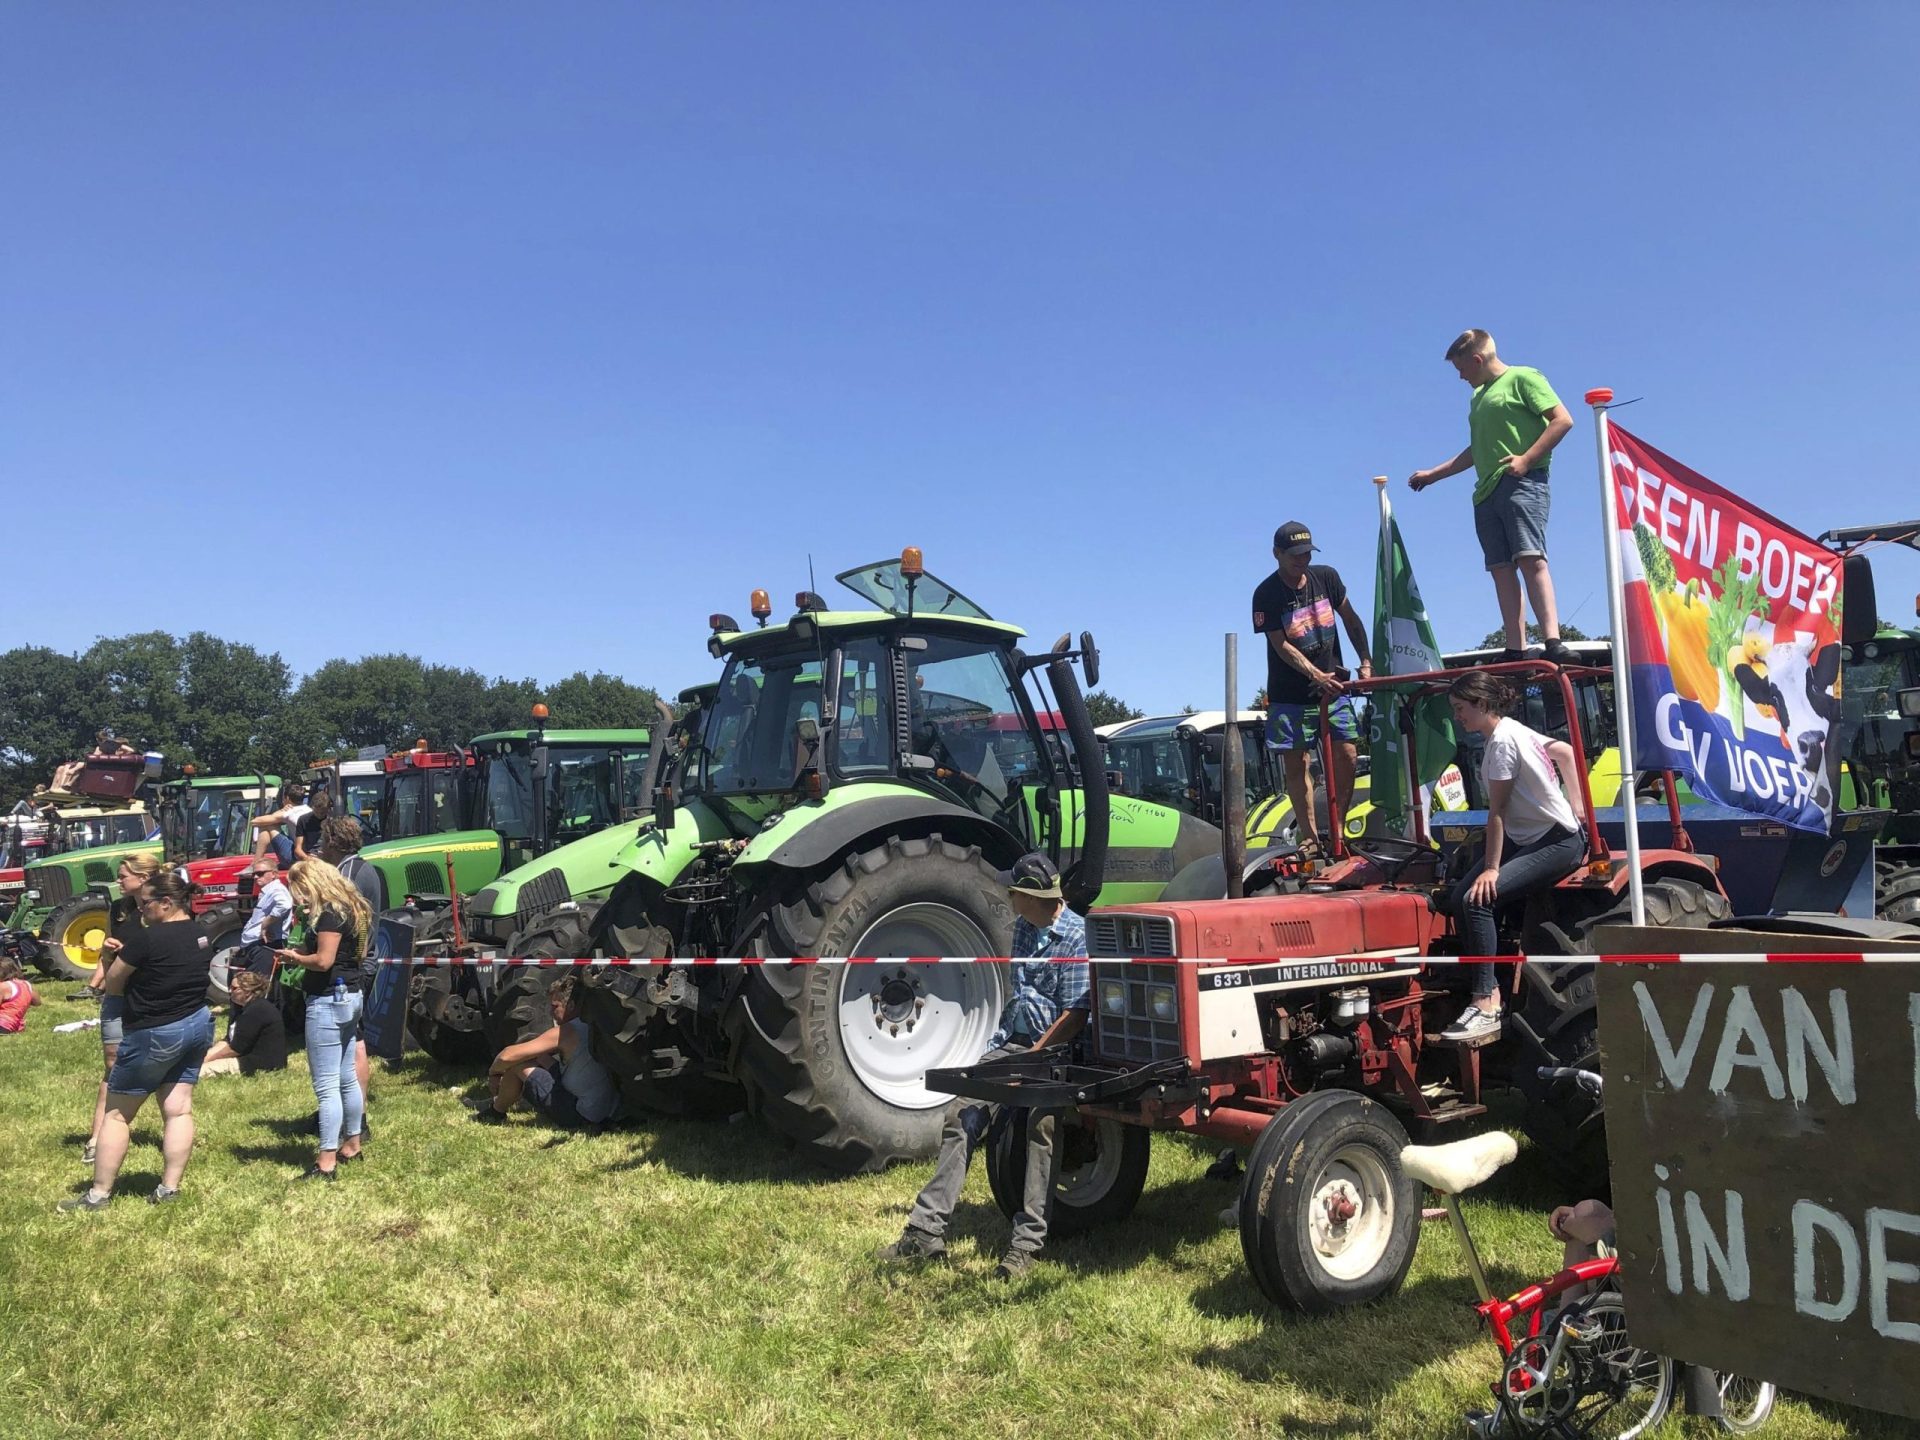 Agricultores enfadados bloquean las carreteras holandesas para protestar contra el plan de contaminación